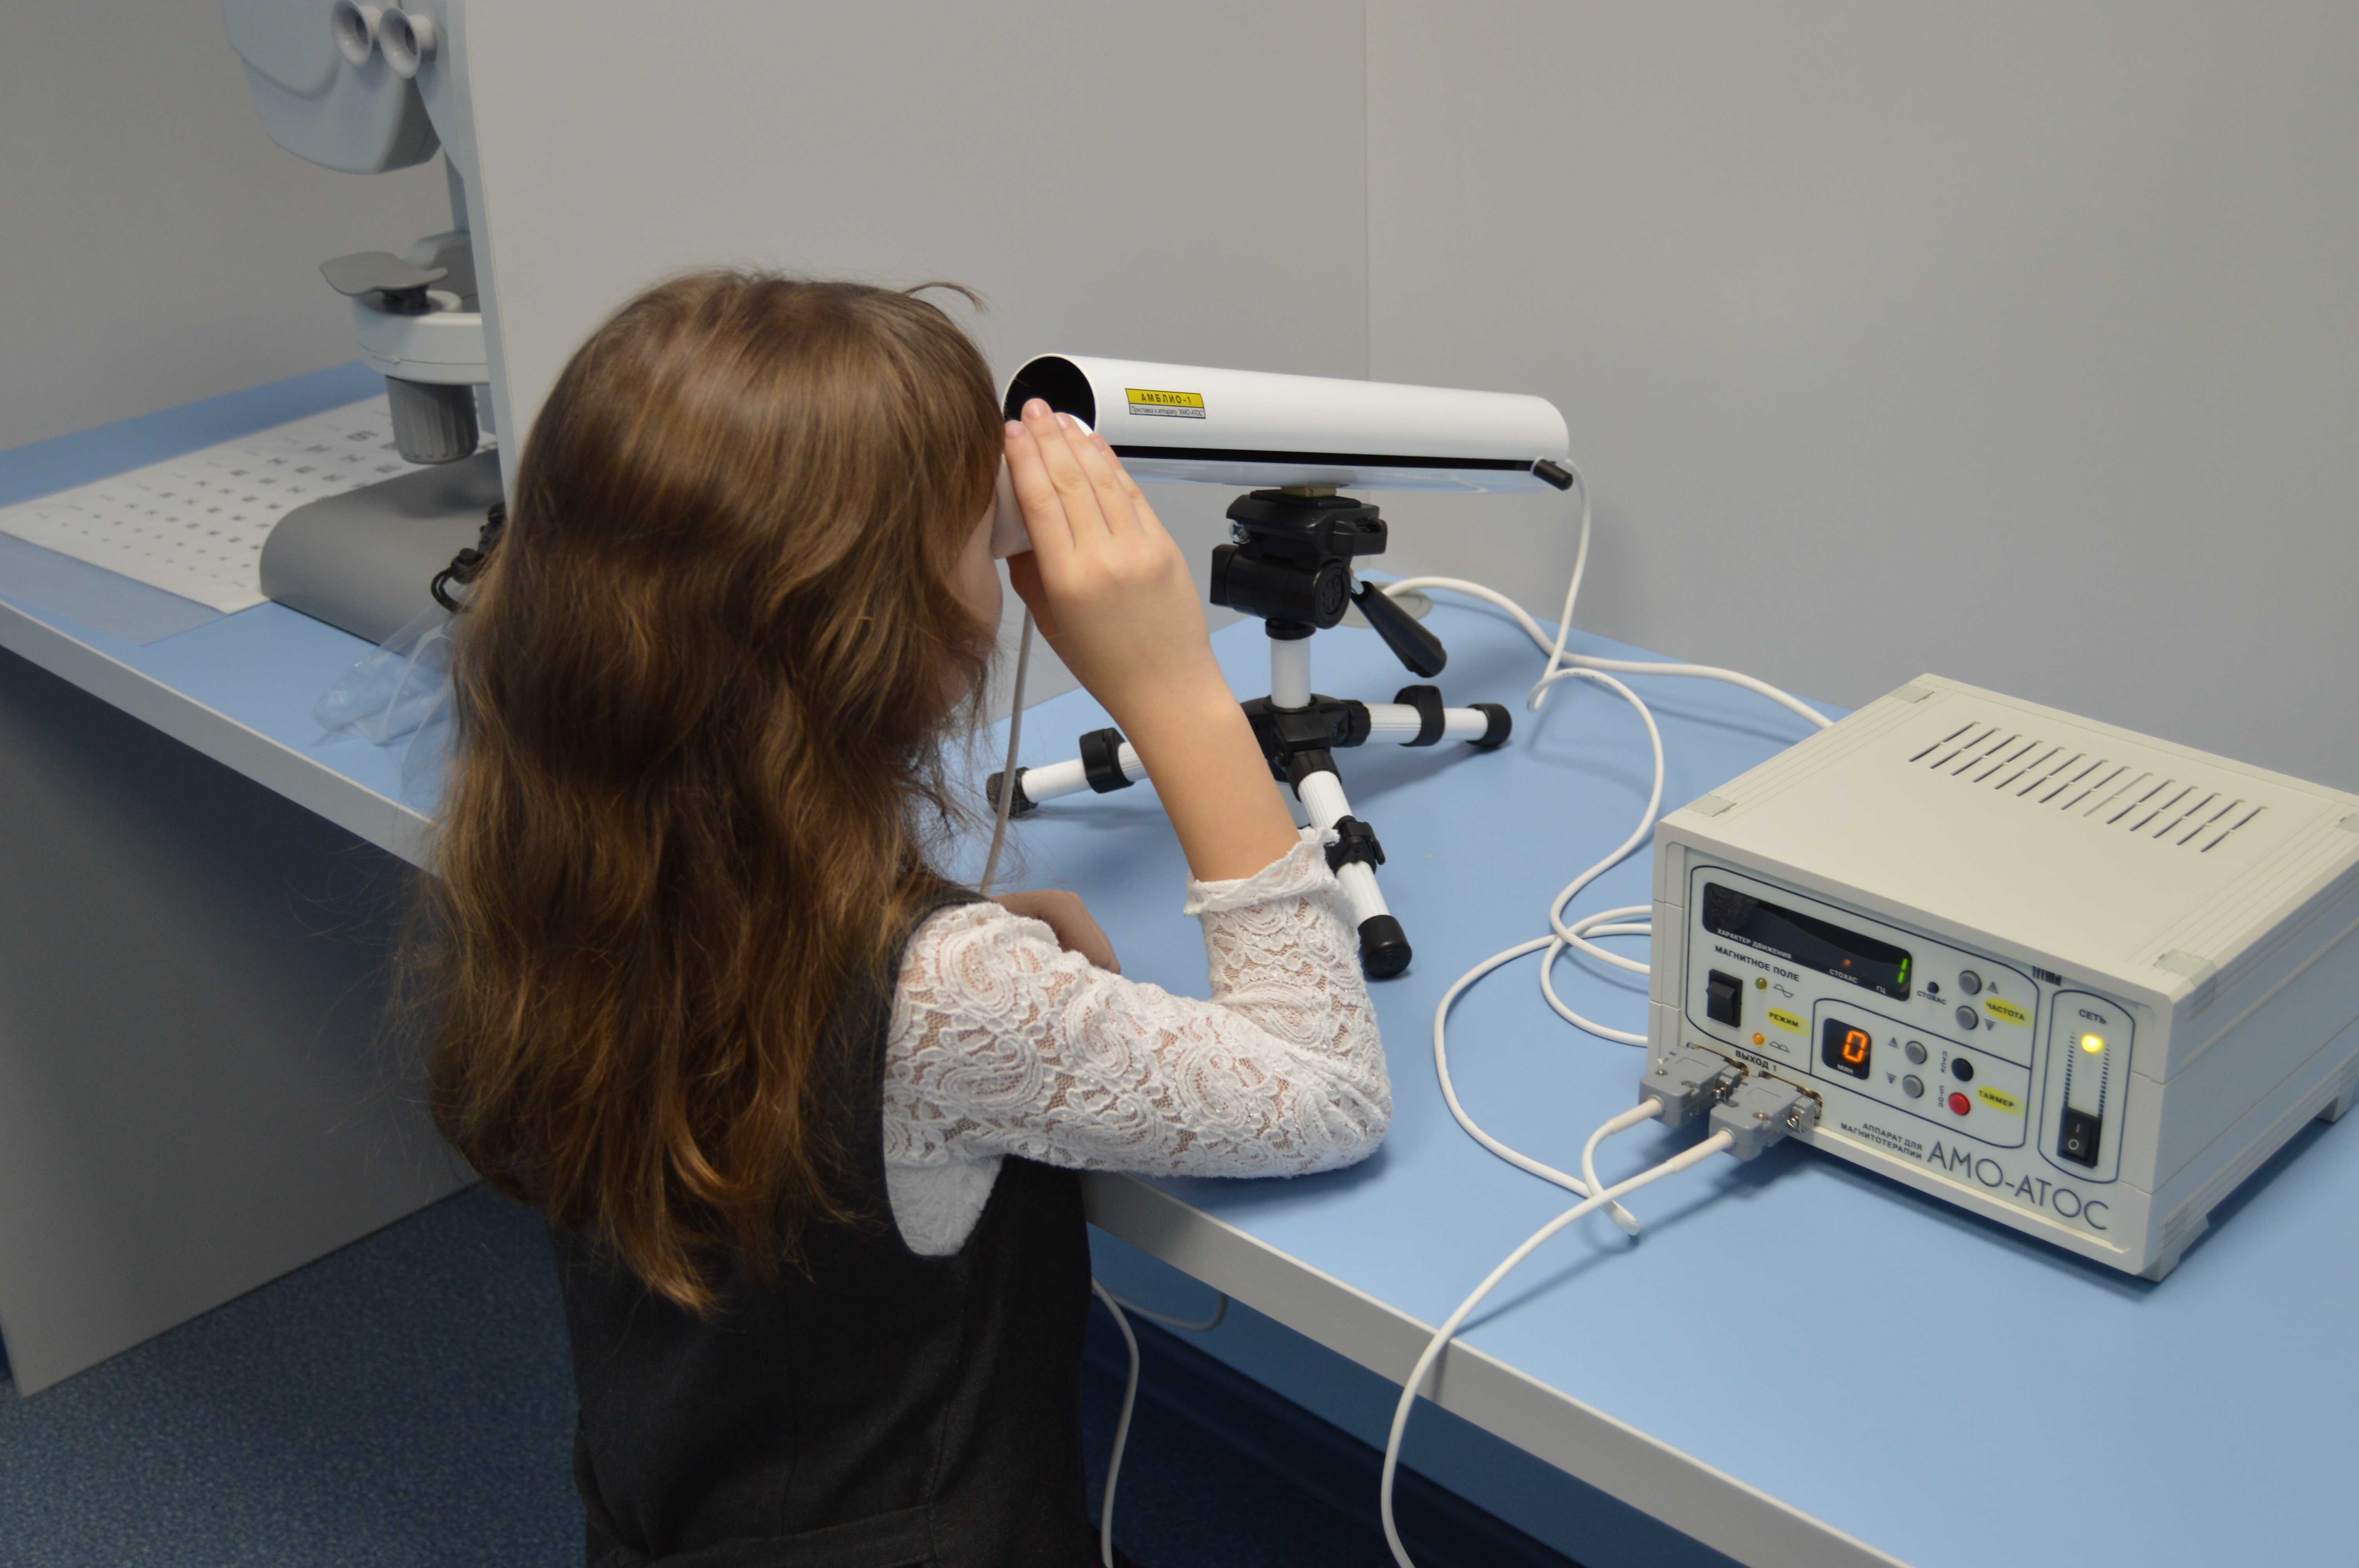 Аппарат АМО Атос для глаз магнитотерапия. Аппарат магнитотерапевтический АМО-Атос с приставкой АМБЛИО-1. Офтальмологический аппарат спекл. Аппарат лазерный офтальмологиический «спекл-м». Коррекция зрения какие методы